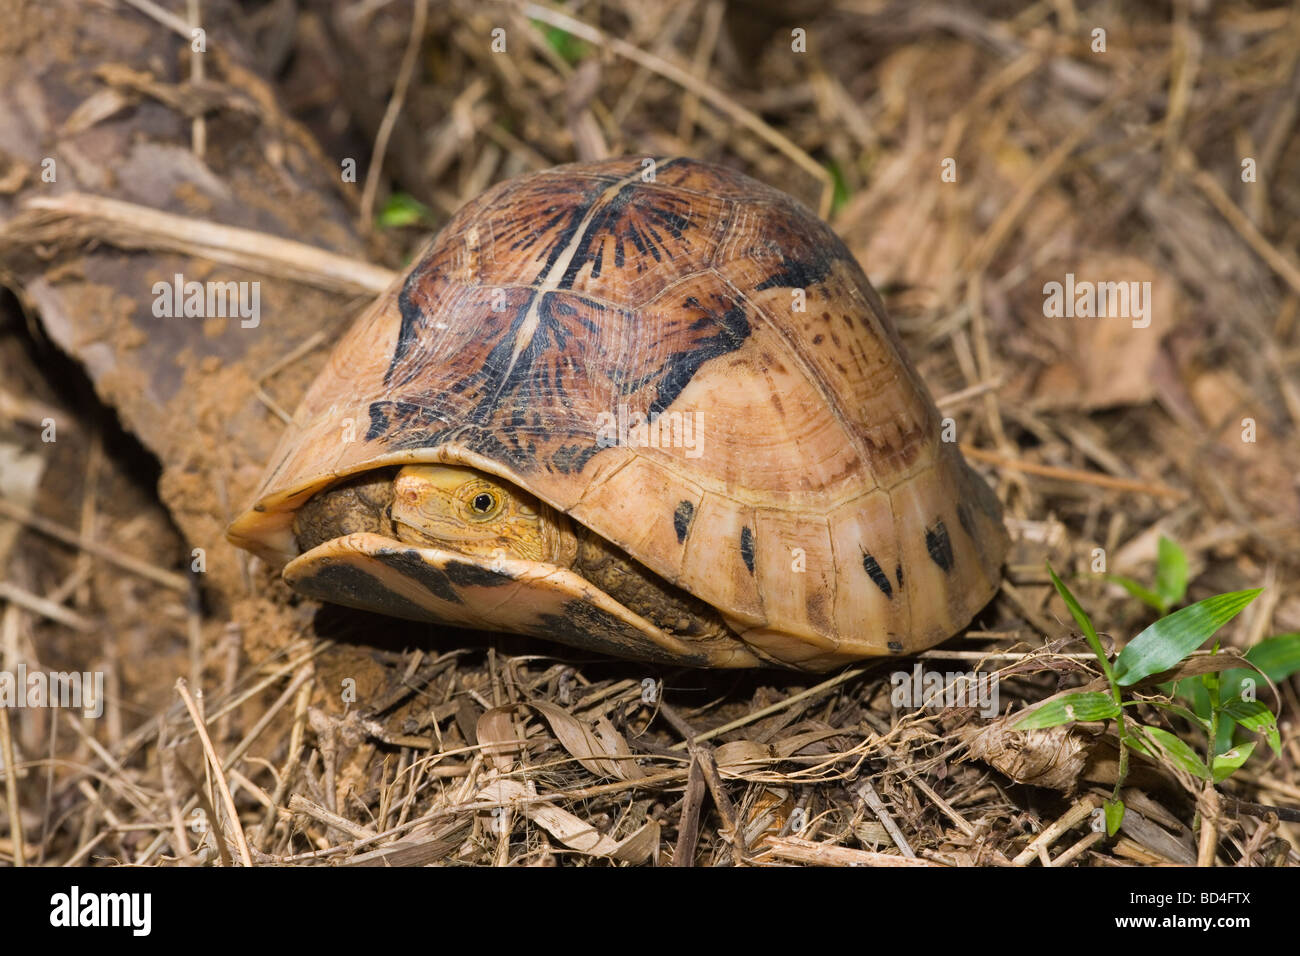 Indochinesischen Flowerback Box Turtle (Cuora galbinifrons). Kopf Vorderbeine aus zwischen oberen und abgesenkt, Shell, Plastron, öffnen. Stockfoto